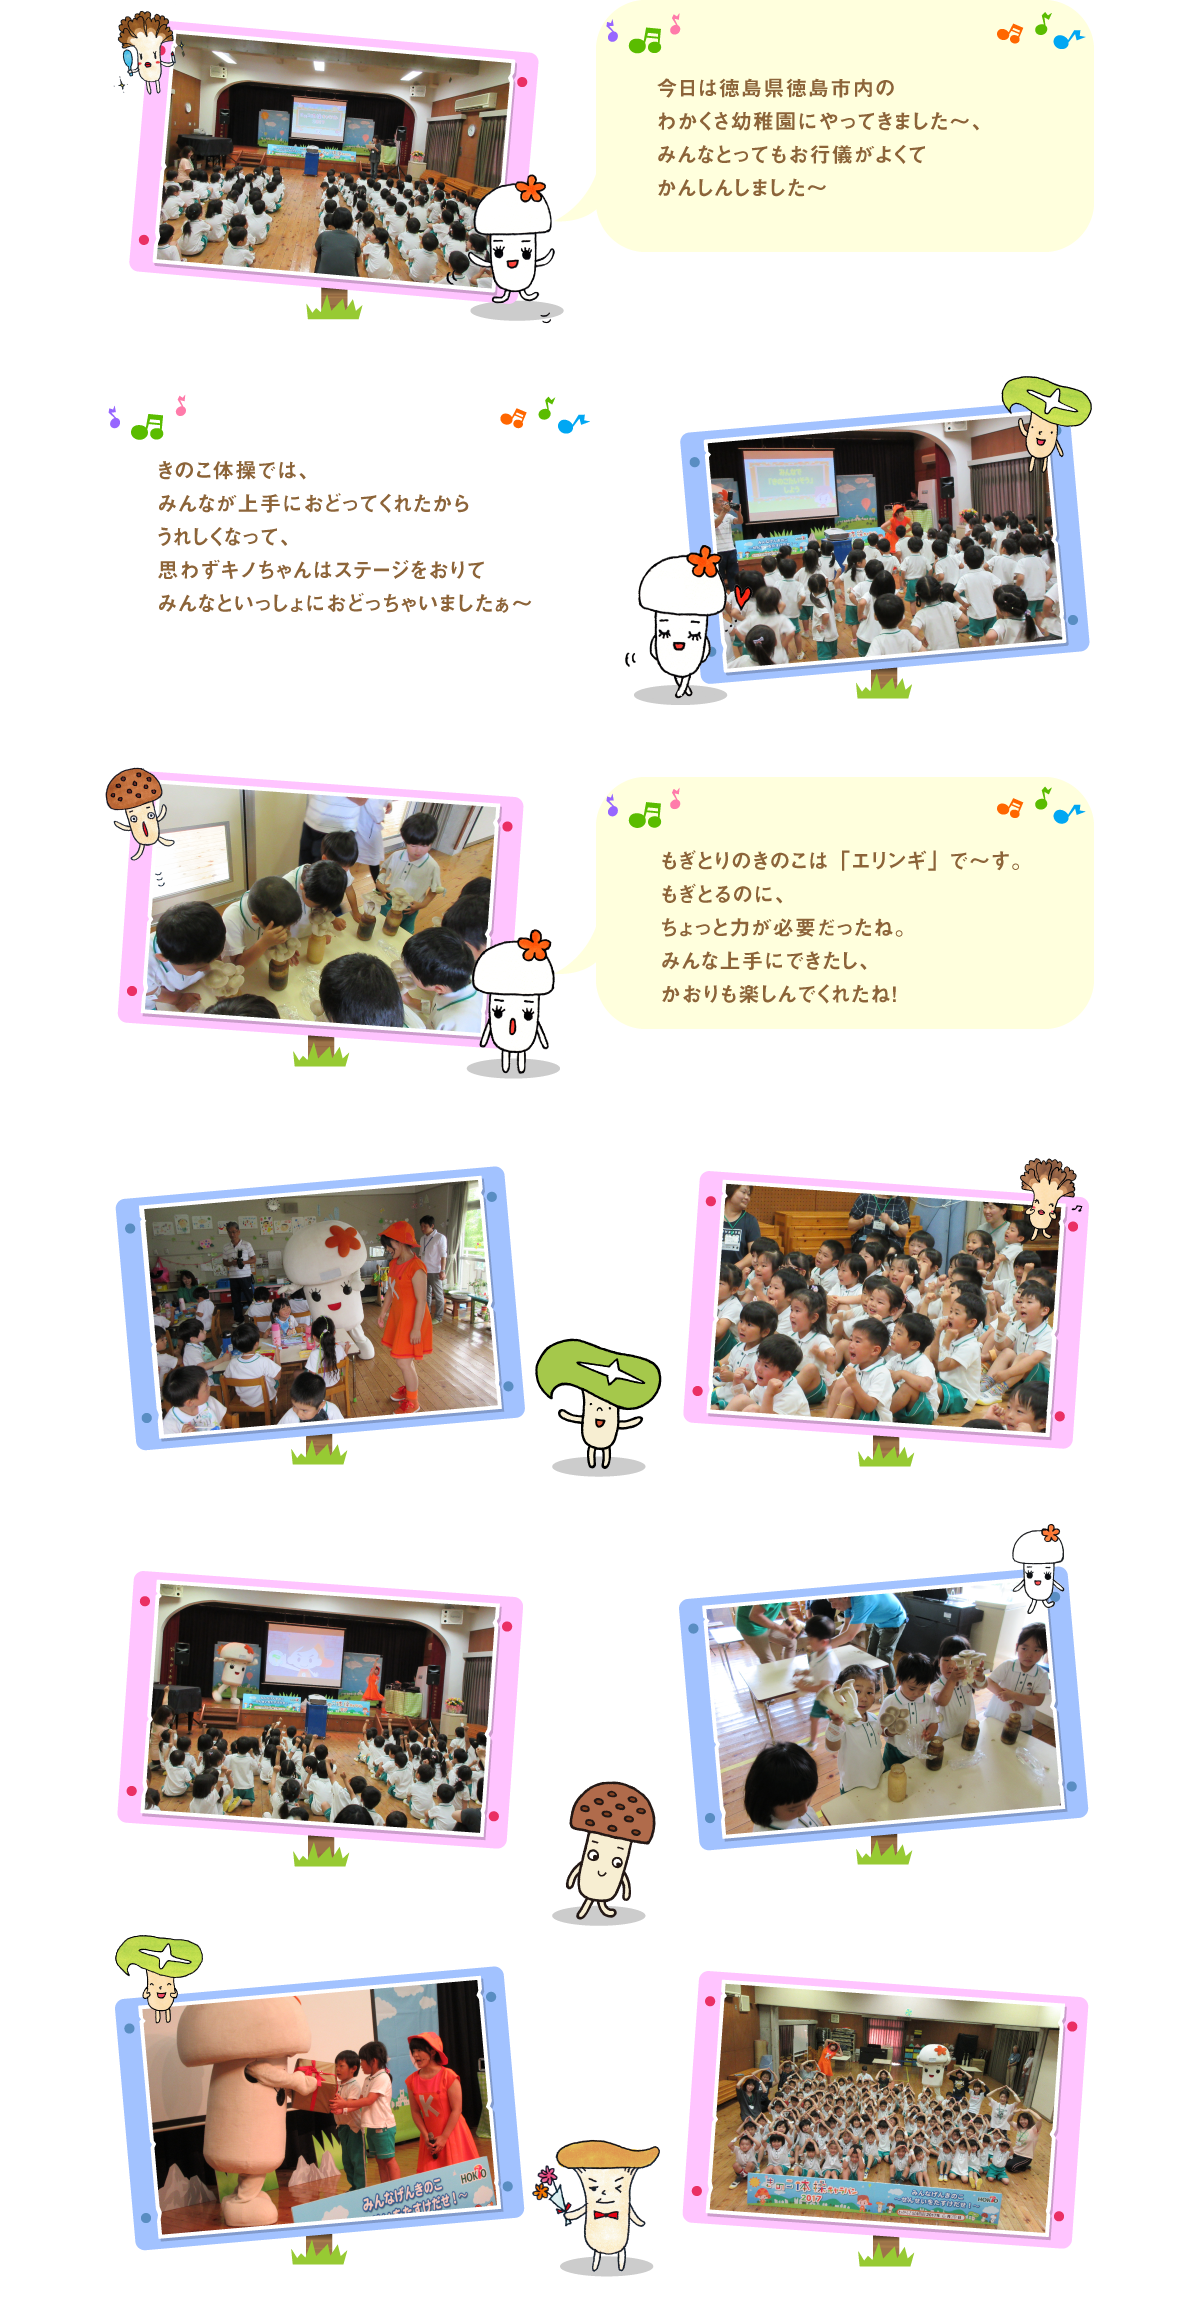 
今日は徳島県徳島市内のわかくさ幼稚園にやって
きました～、みんなとってもお行儀がよくて
かんしんしました～

きのこ体操では、みんなが上手におどってくれたから
うれしくなって、思わずキノちゃんはステージをおりて
みんなといっしょにおどっちゃいましたぁ～

もぎとりのきのこは「エリンギ」で～す。
もぎとるのに、ちょっと力が必要だったね。
みんな上手にできたし、かおりも楽しんでくれたね！




